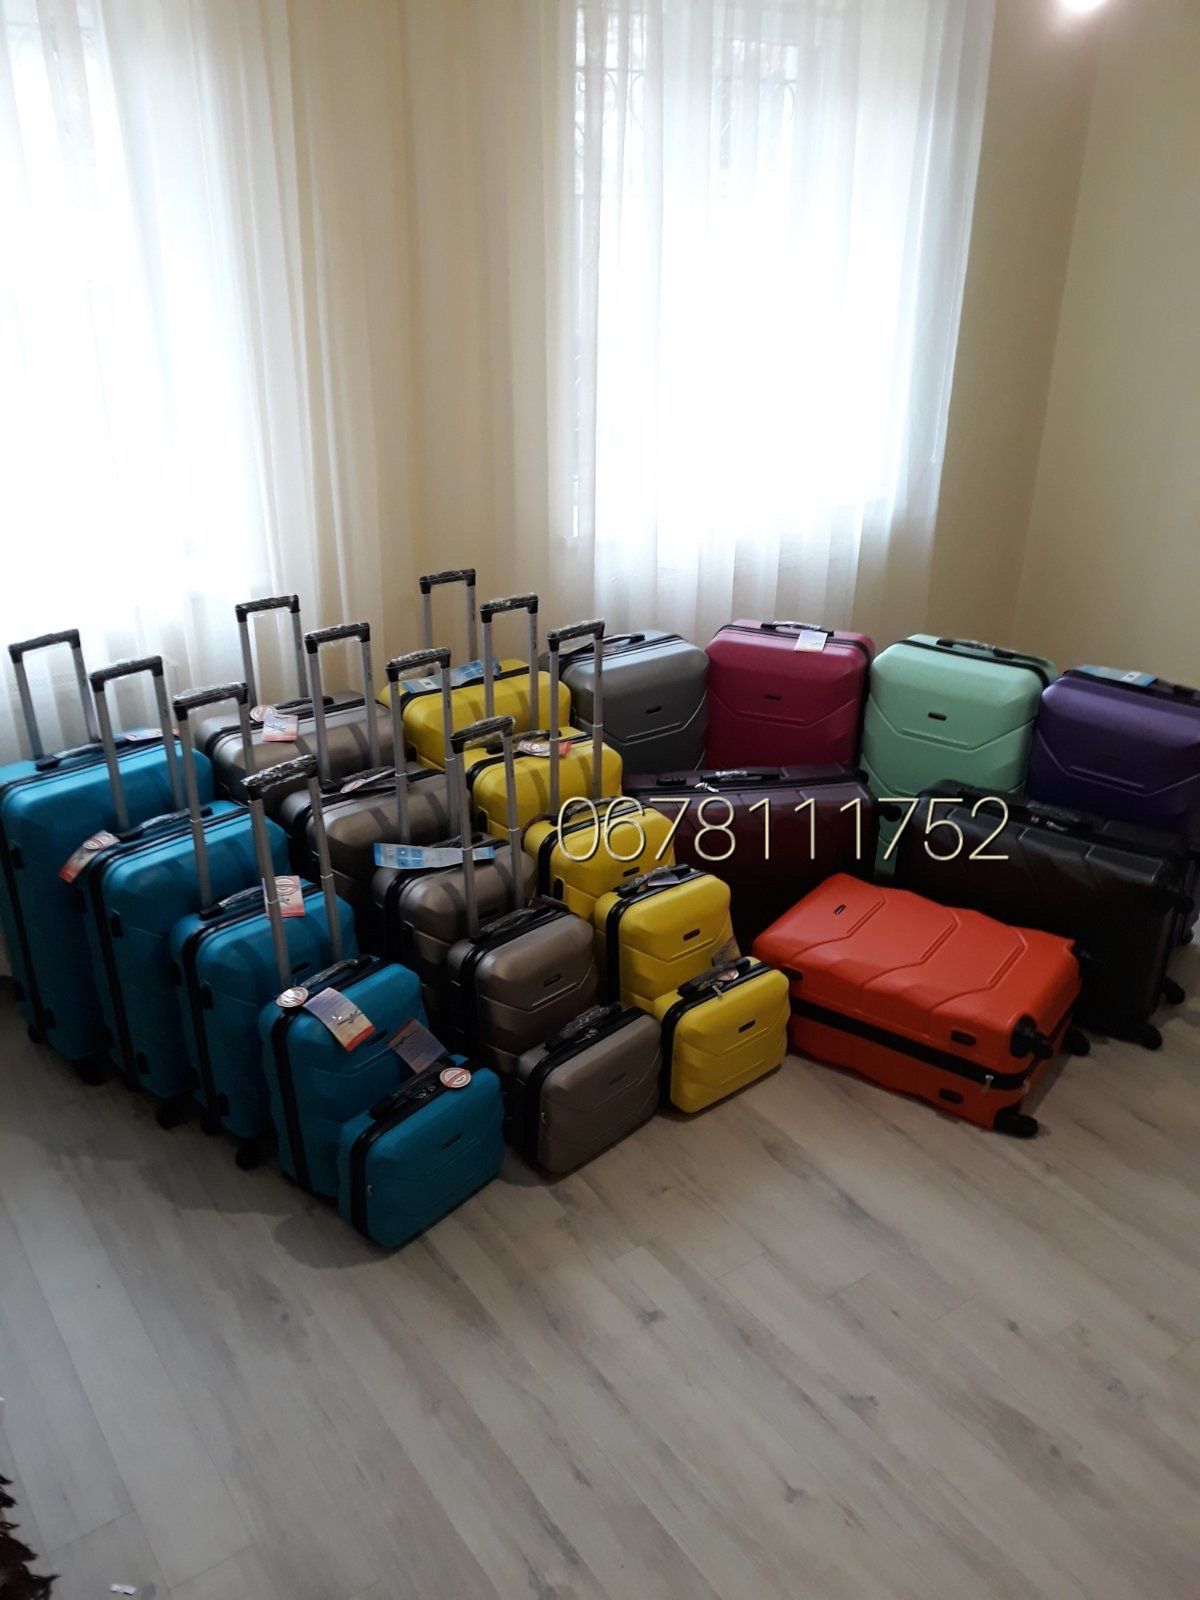 WINGS модель 147 Польща валізи чемоданы сумки на колесах комплект